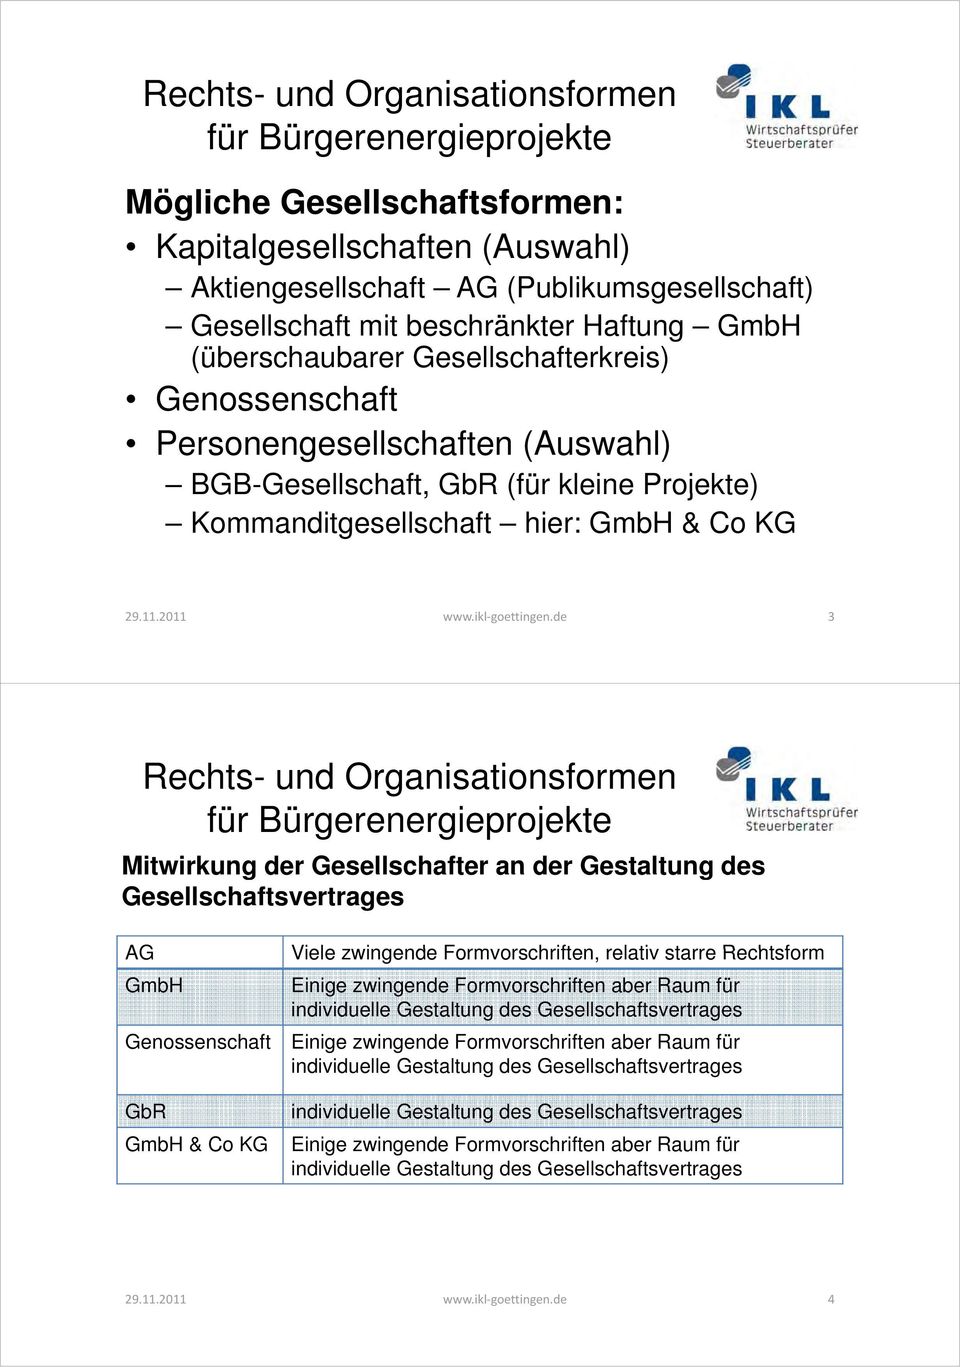 de 3 Mitwirkung der Gesellschafter an der Gestaltung des Gesellschaftsvertrages AG GmbH Genossenschaft GbR GmbH & Co KG Viele zwingende Formvorschriften, relativ starre Rechtsform Einige zwingende